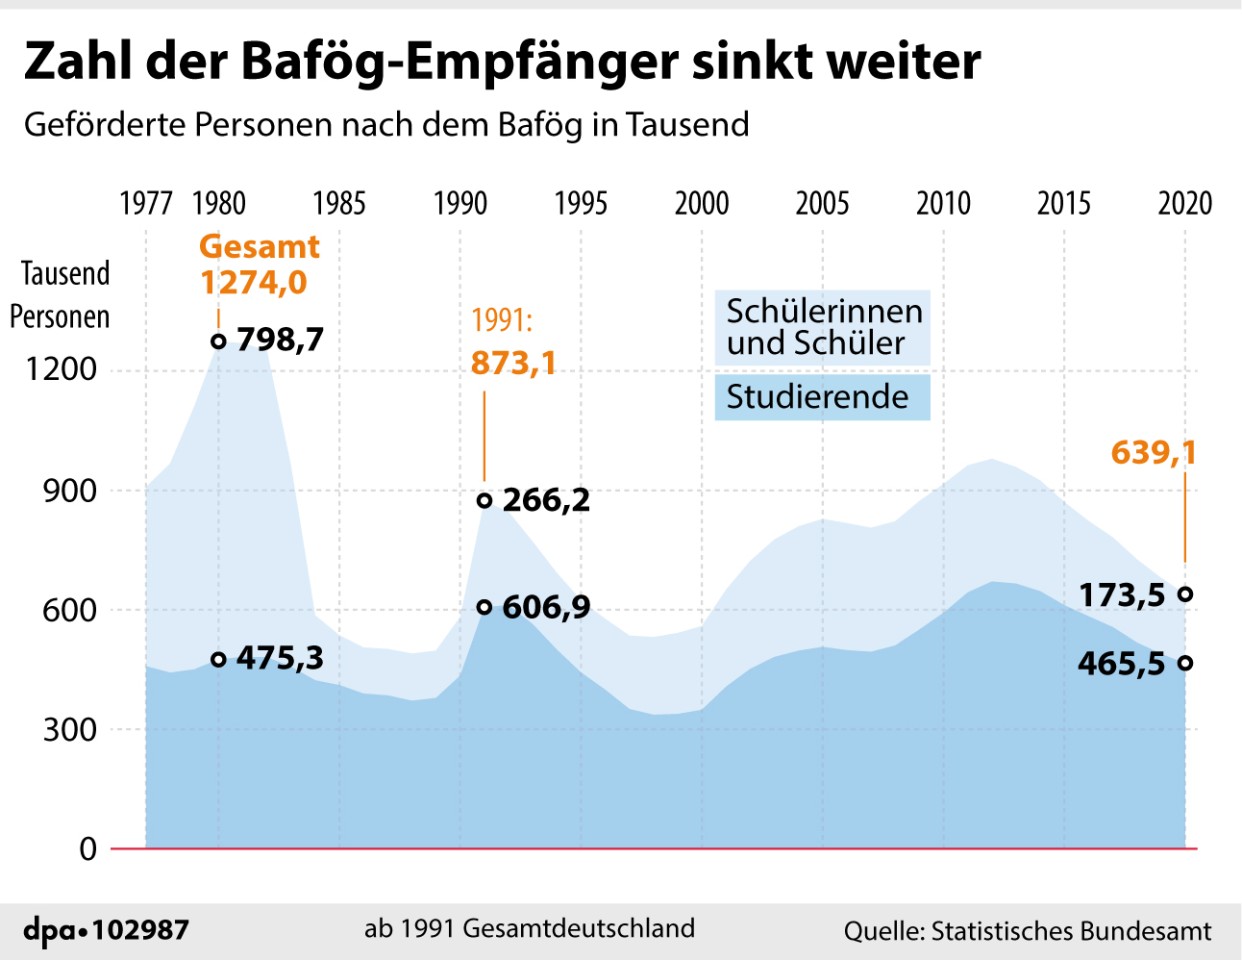 Die Zahl der Bafög-Empfänger nahm in den vergangenen Jahren deutlich ab. Aktuell liegt die Gesamtzahl etwa halb so hoch wie noch 1980. 